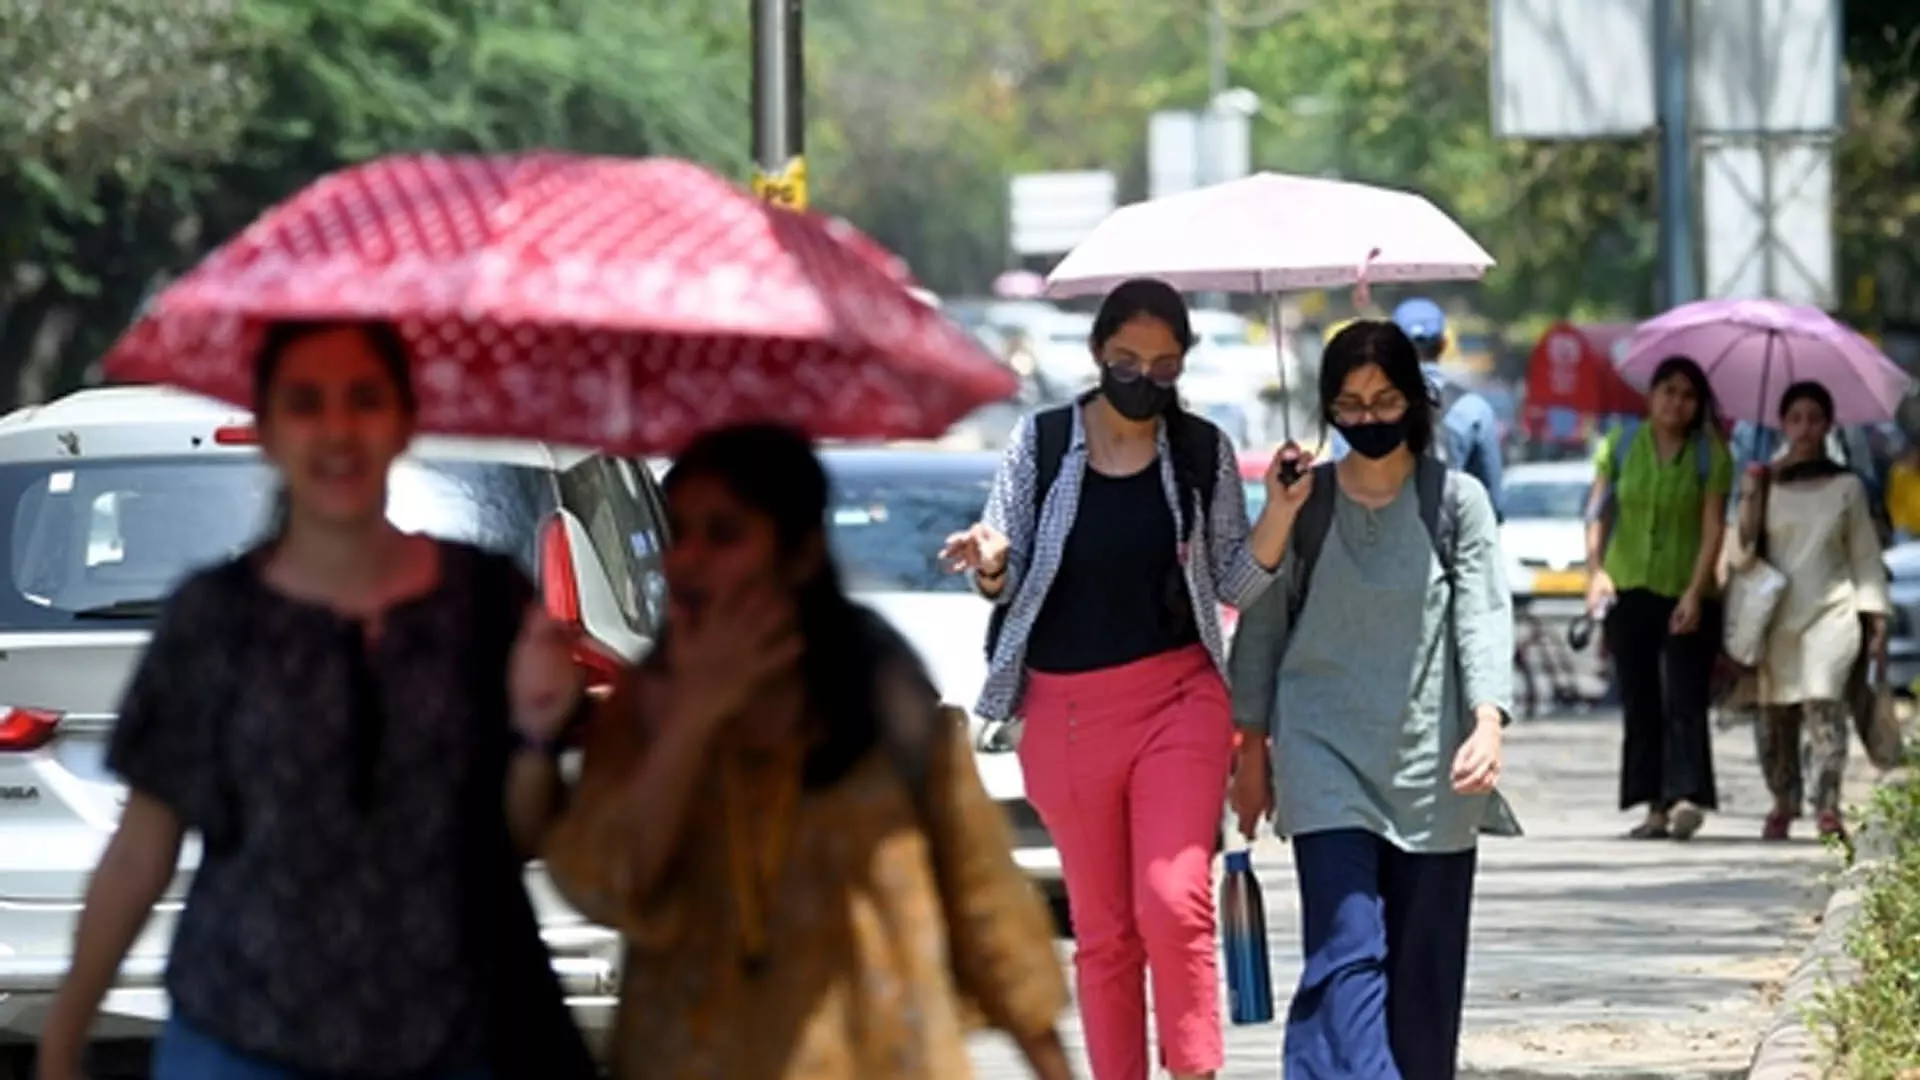 weather starts warm: चंडीगढ़ का मौसम 29.7 °C पर गर्म शुरुआत